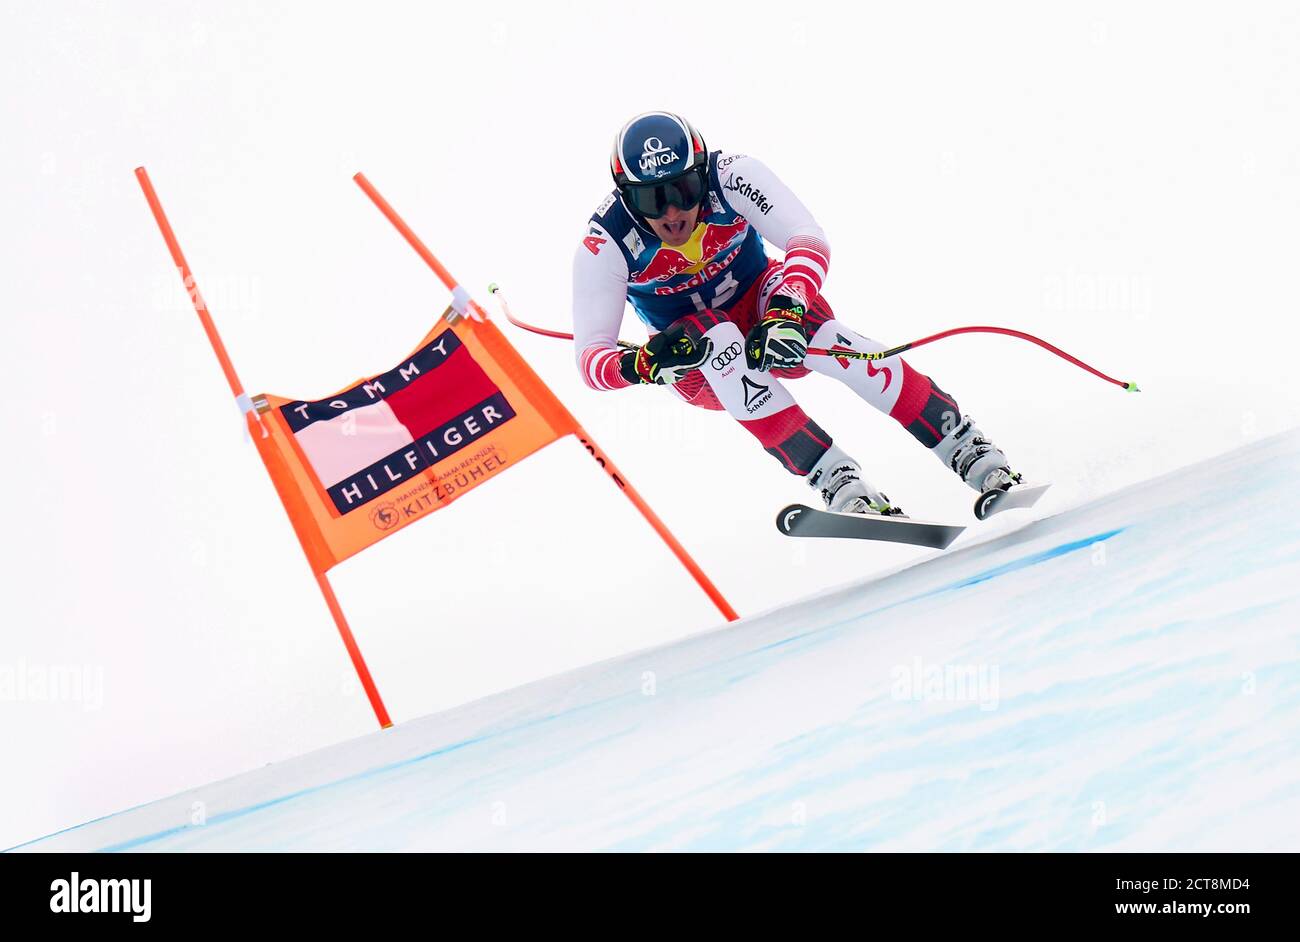 Matthias Mayer è sulla strada della vittoria durante l'evento Men's Downhill per la Coppa del mondo di sci alpino FIS a Kitzbuhel. PHOTO CREDIT : MARK PAIN / ALAMY Foto Stock